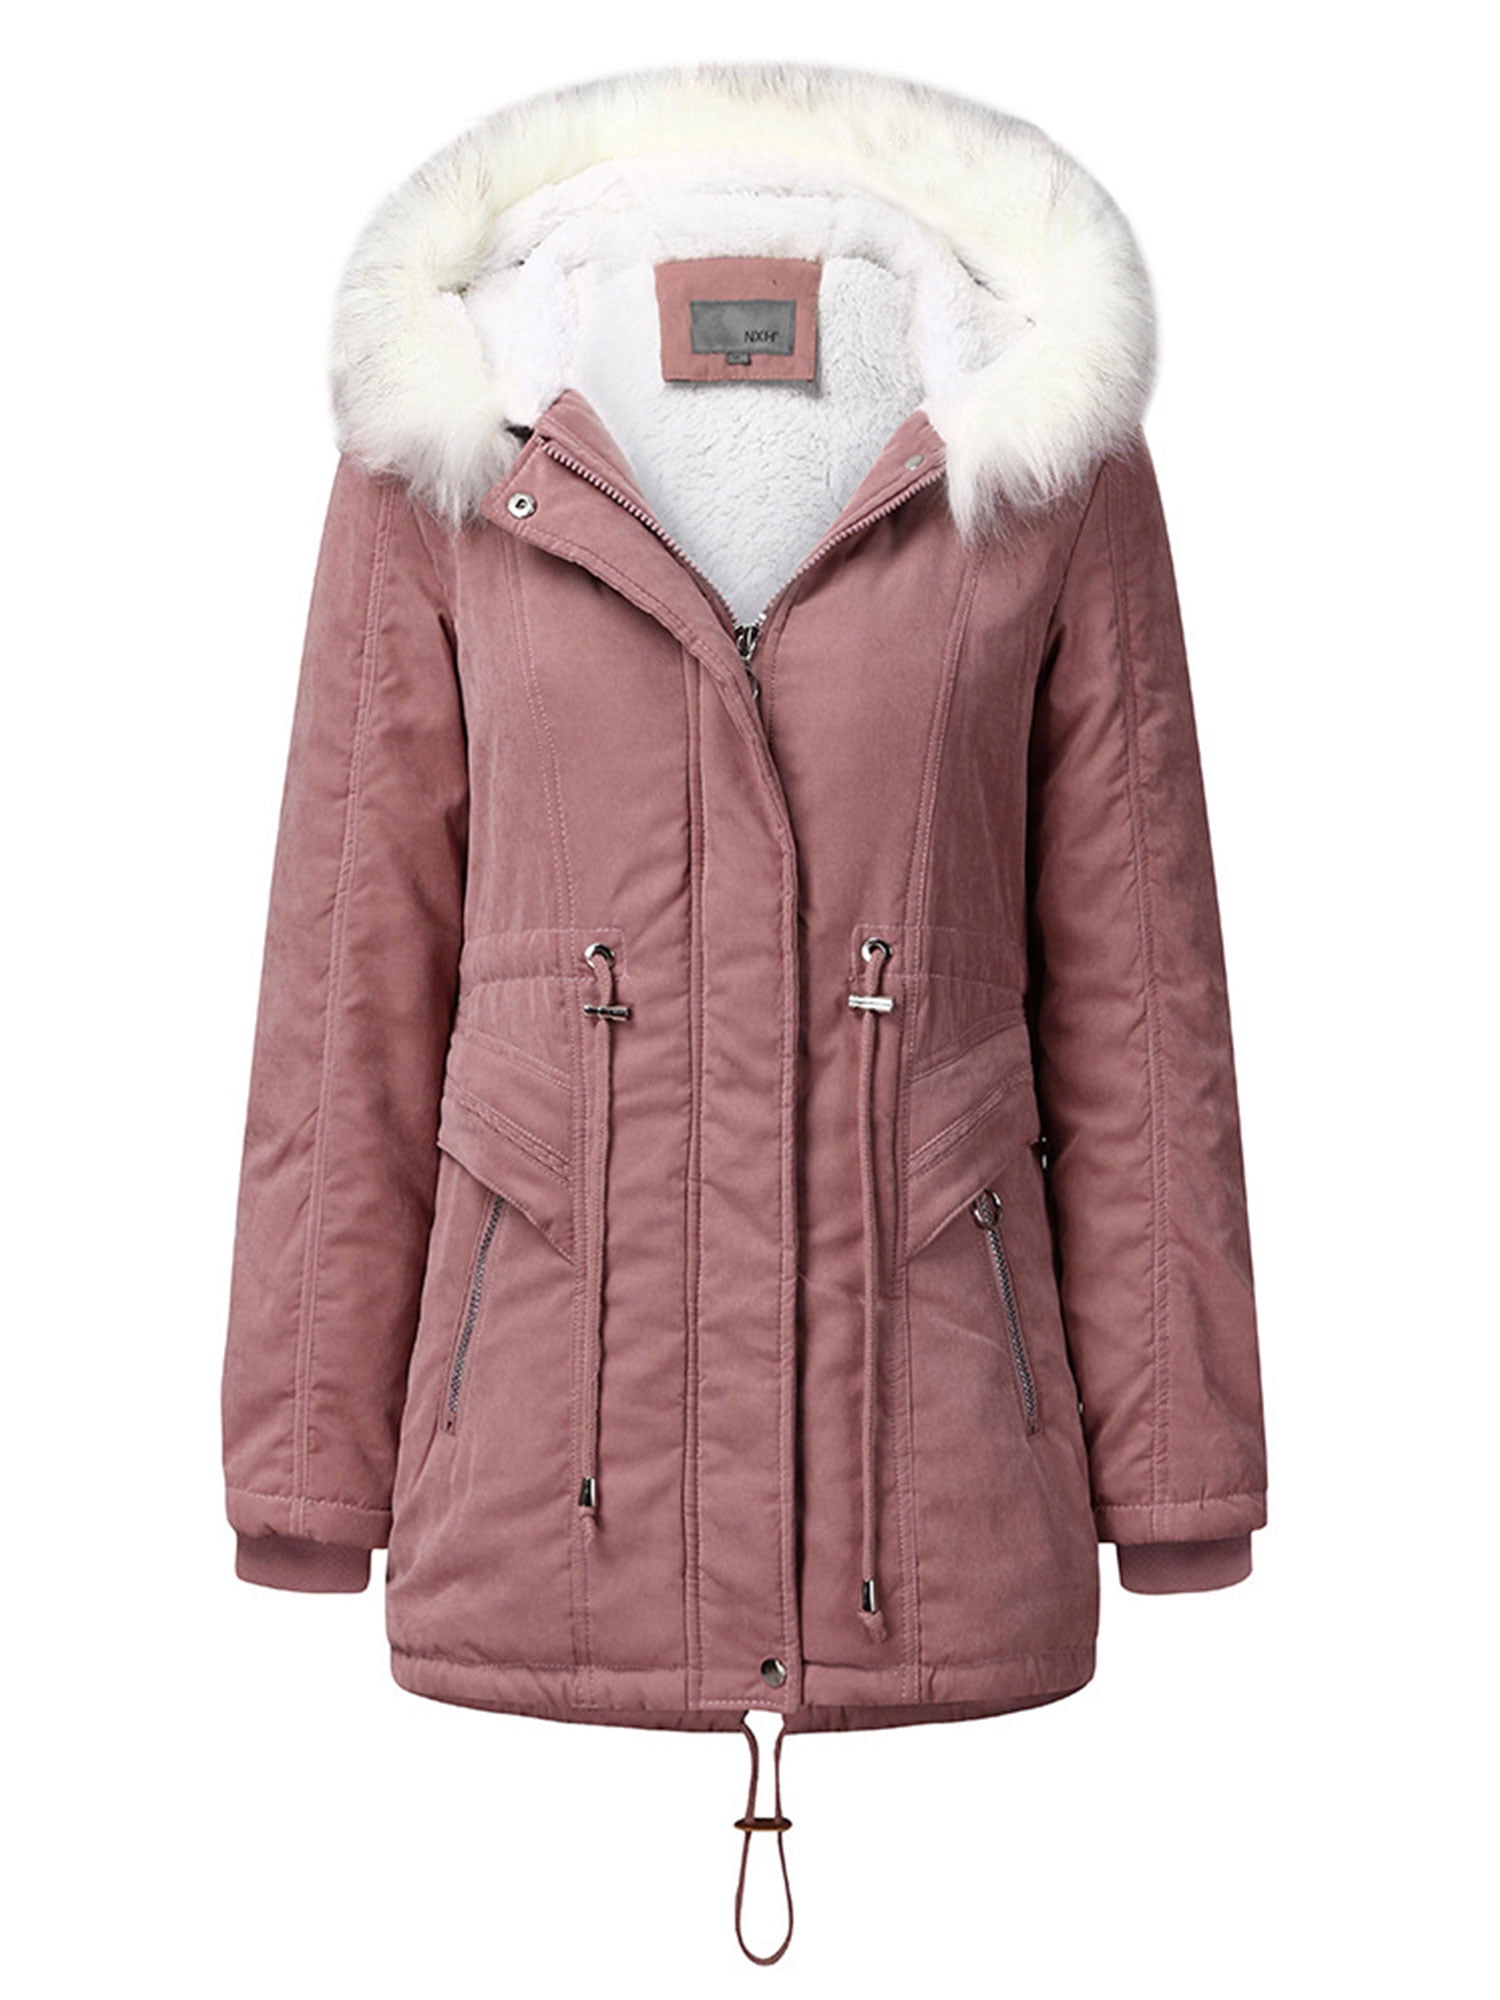 Makulas Womens Cardigan Coat,Women Warm Pocket Fluffy Parka Jacket Ladies Zipper Fleece Fur Overcoat Outwear Clearance